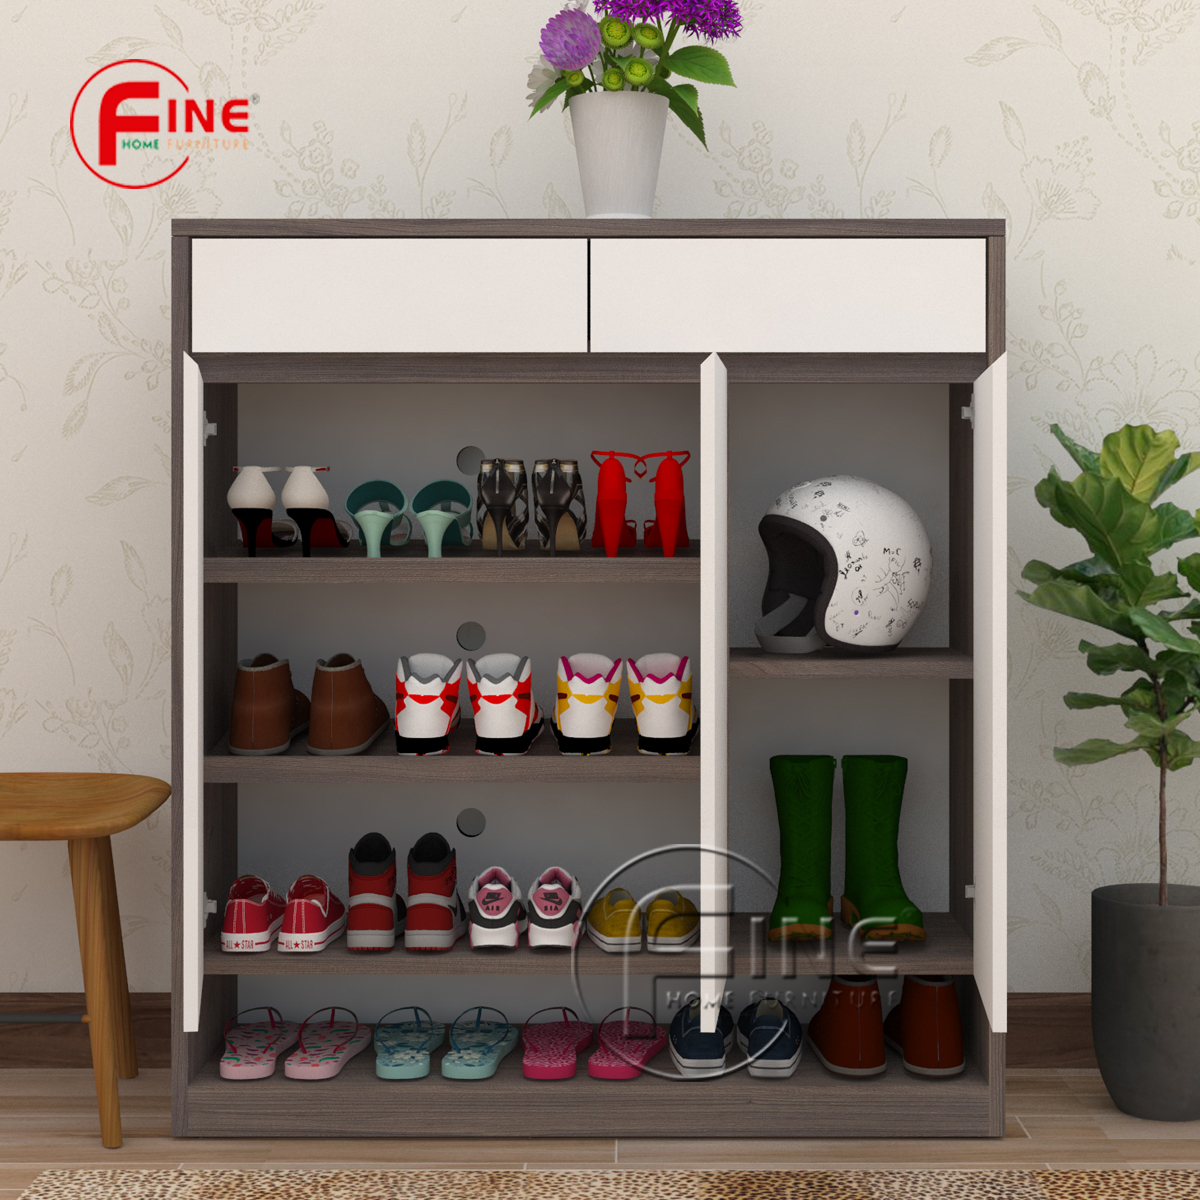 Tủ Giày Dép FINE hiện đại sang trọng phong cách thời trang FTG019 phù hợp cho Căn Hộ, Nhà Phố